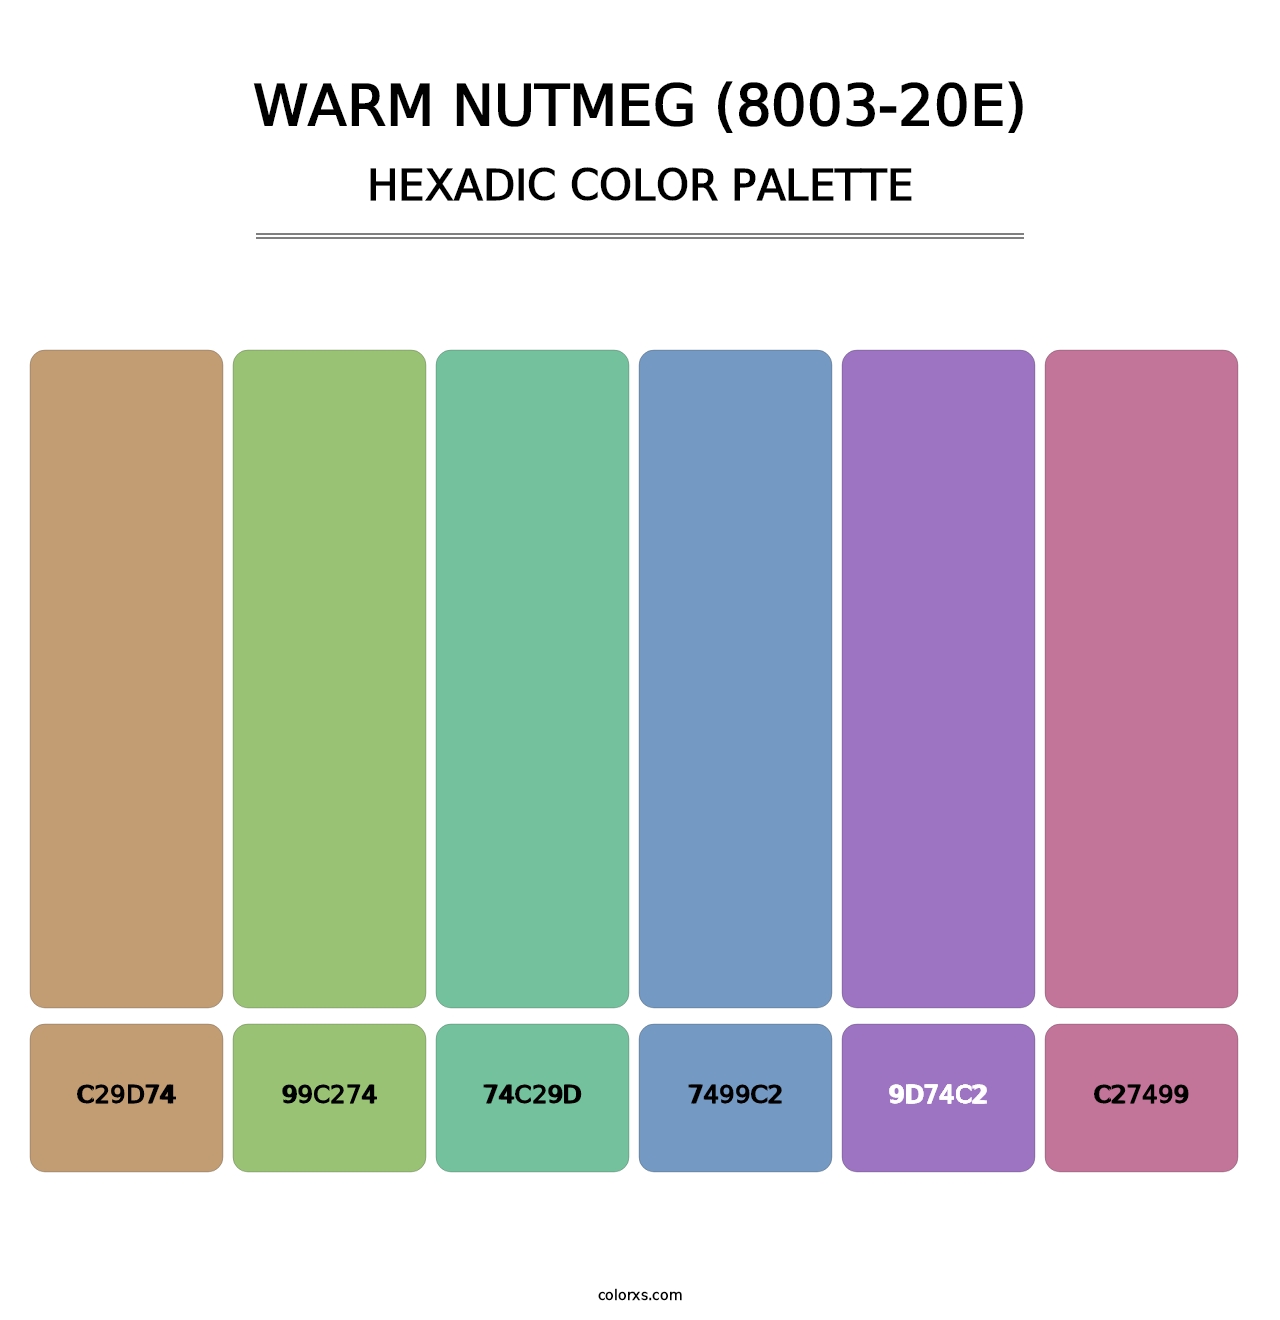 Warm Nutmeg (8003-20E) - Hexadic Color Palette